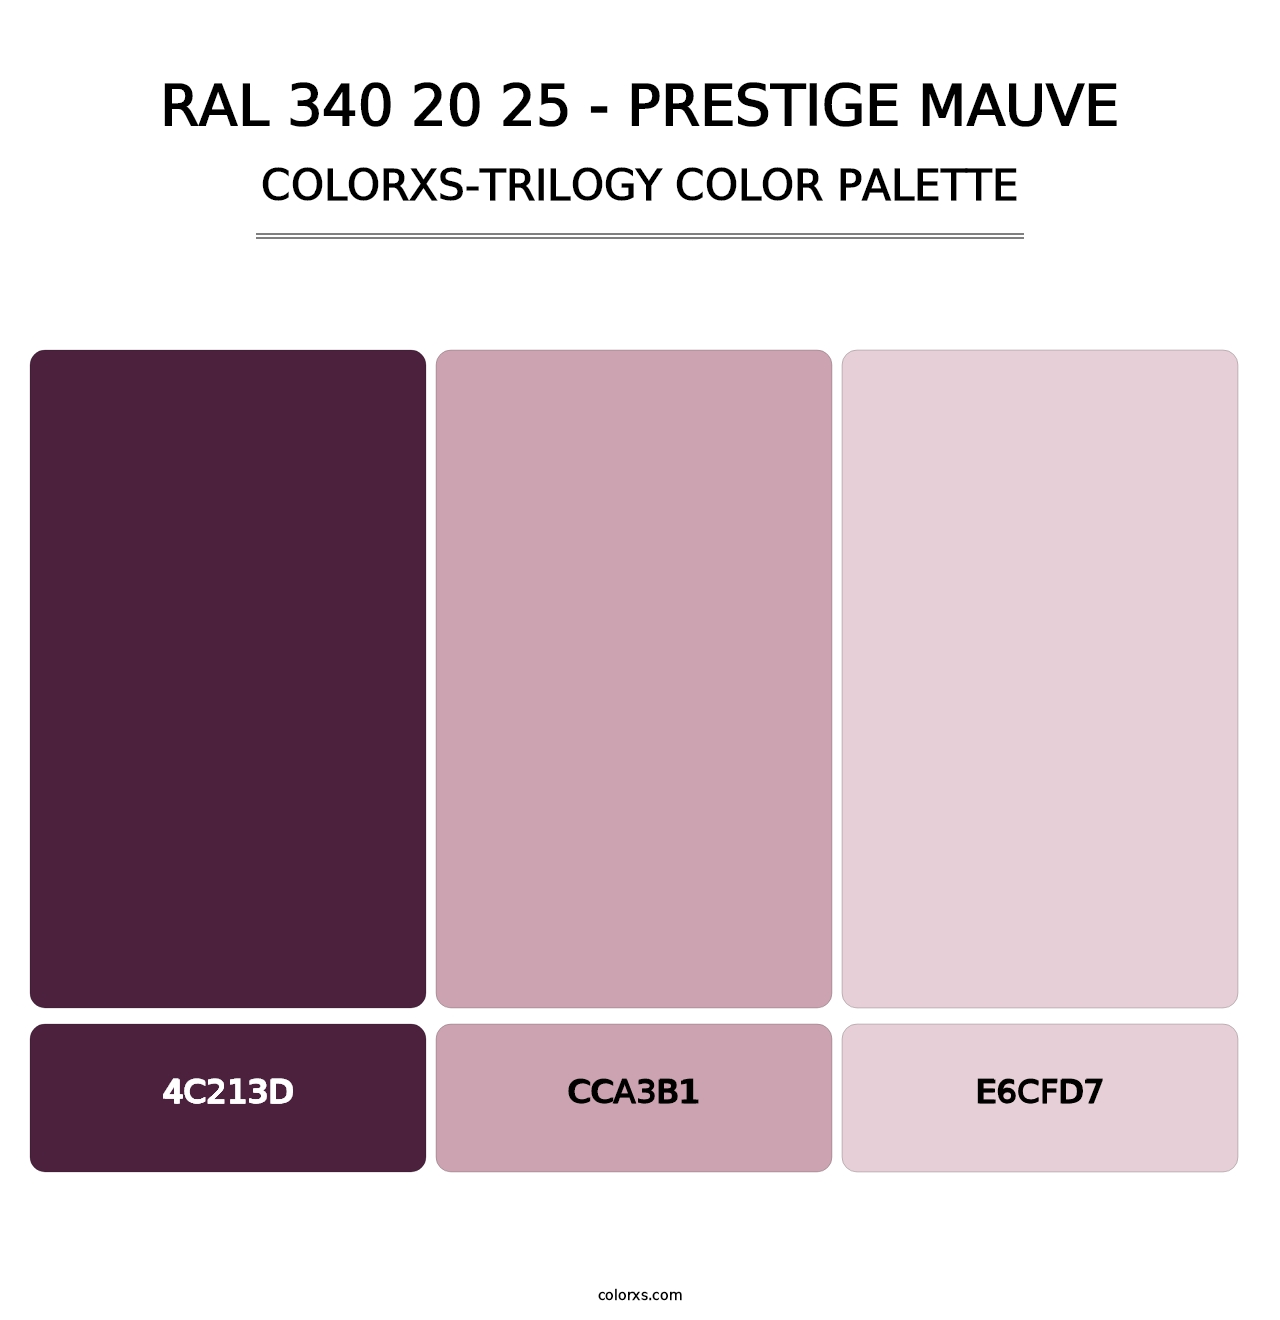 RAL 340 20 25 - Prestige Mauve - Colorxs Trilogy Palette